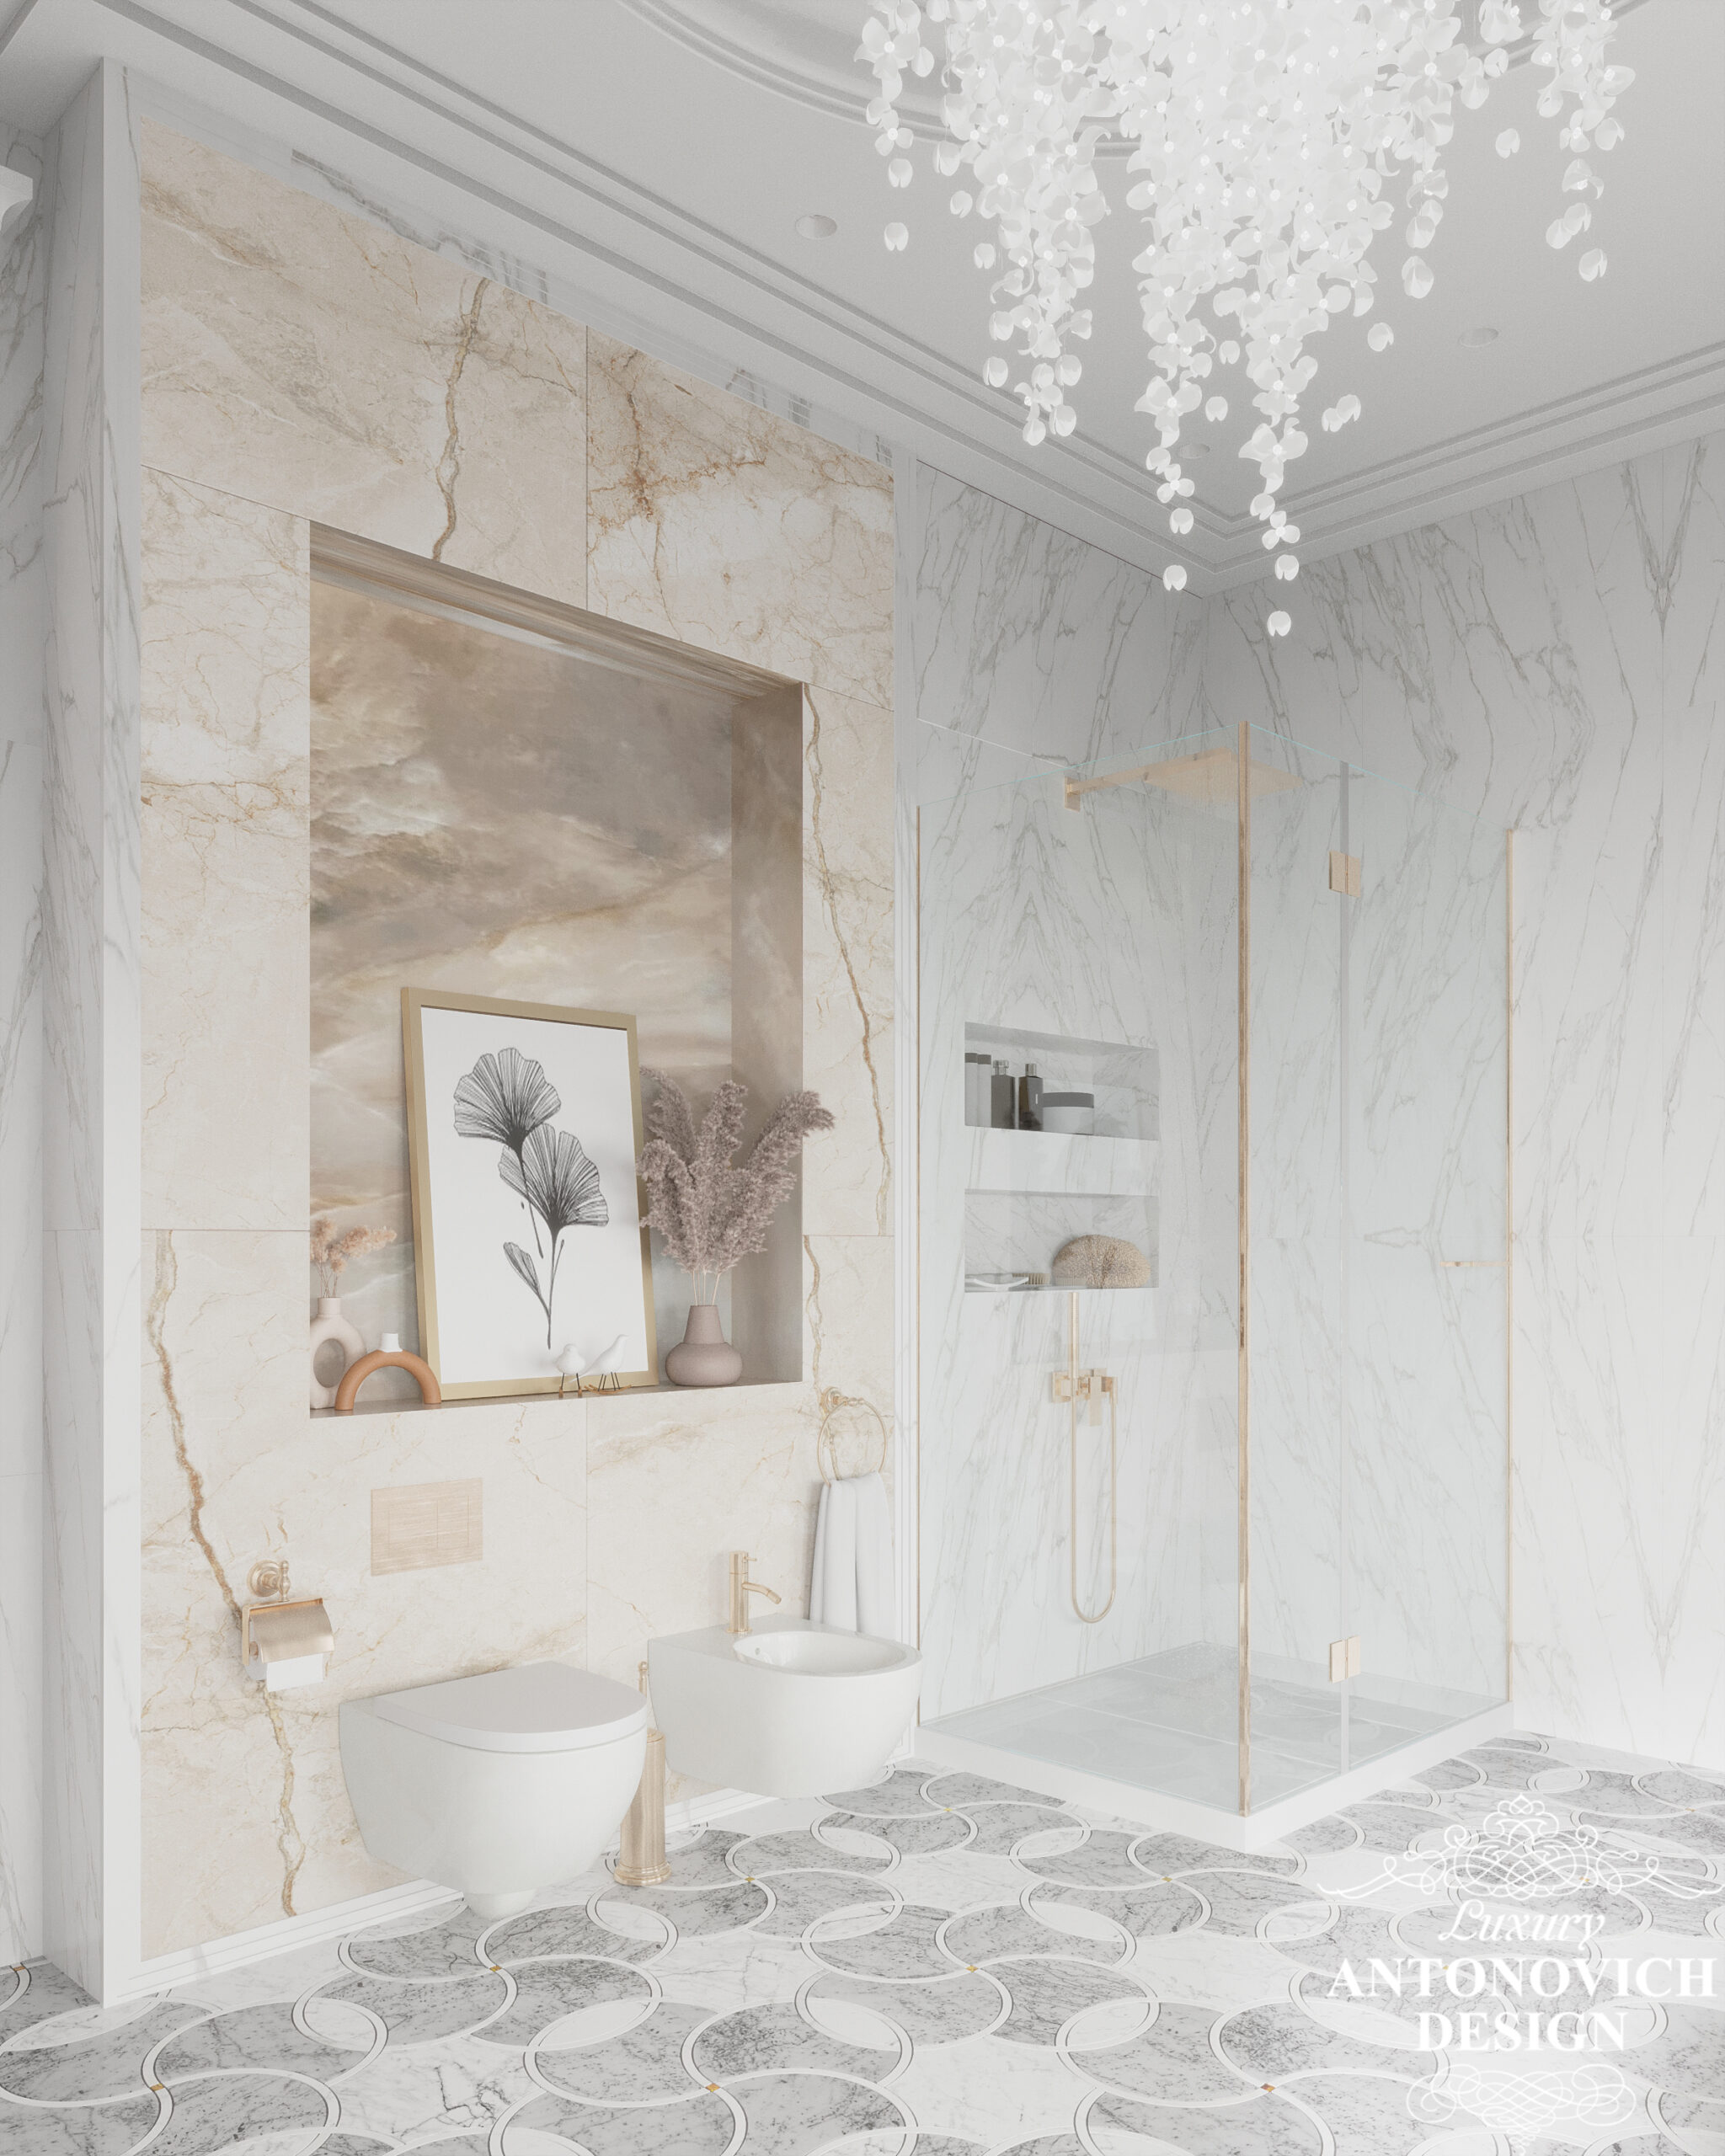 Оригинальная дизайнерская подвесная люстра, мраморный пол, авторский декор в интерьере элегантной ванной комнаты. Дизайн ванной для семьи в частном доме